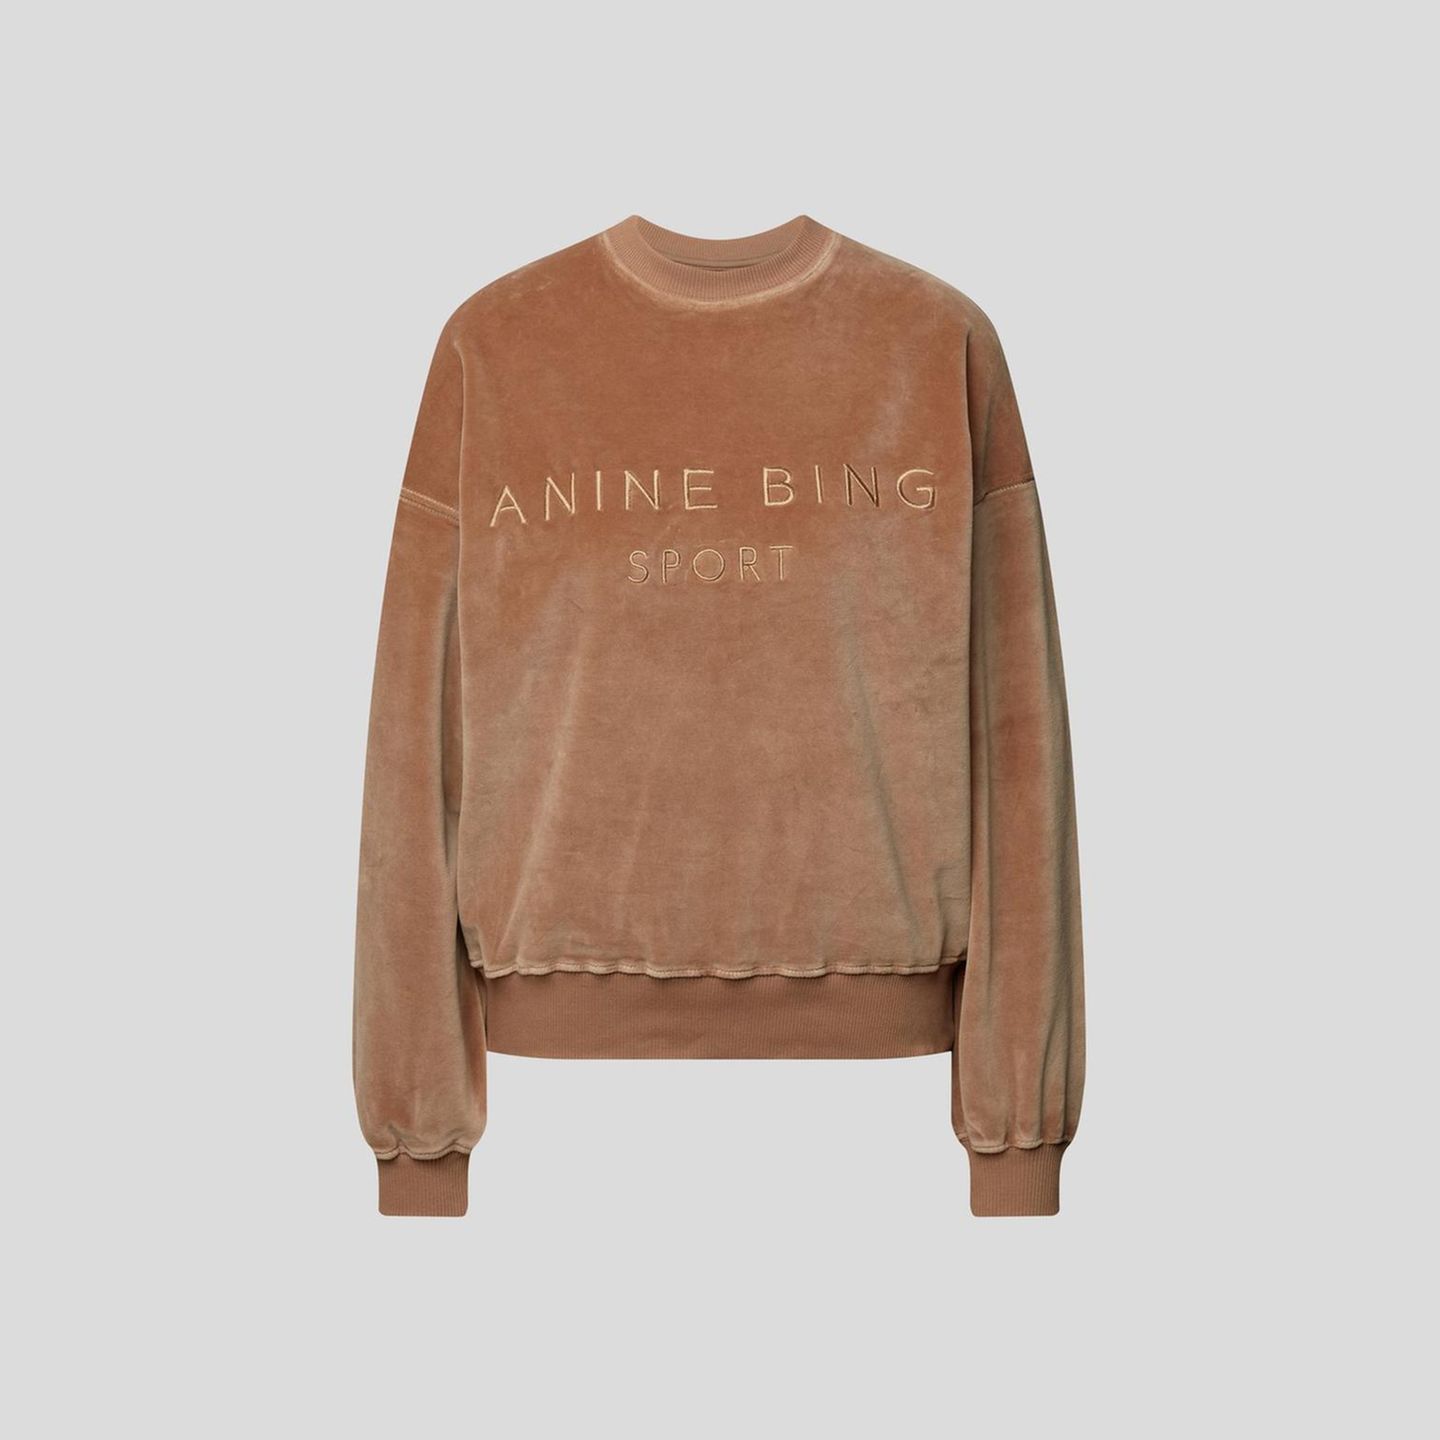 Manche Designer-Pieces sind einfach eine Investition wert, aber am liebsten shoppen wir sie im Sale, wie diesen weichen Pullover von Anine Bing. Über Stylebop, etwa 75 Euro.